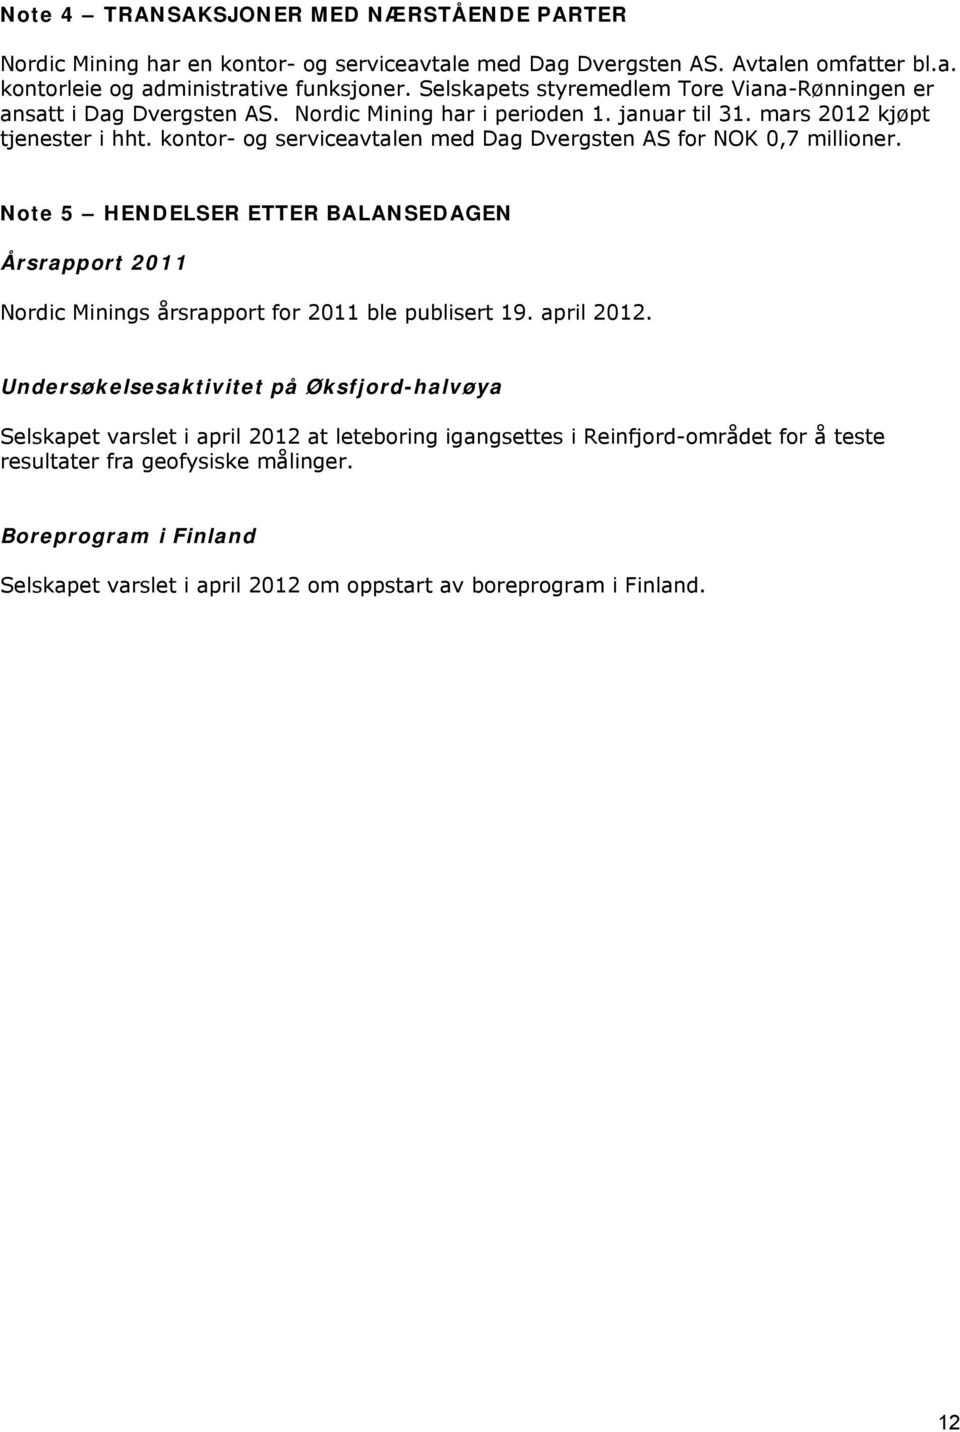 kontor- og serviceavtalen med Dag Dvergsten AS for NOK 0,7 millioner. Note 5 HENDELSER ETTER BALANSEDAGEN Årsrapport 2011 Nordic Minings årsrapport for 2011 ble publisert 19. april 2012.